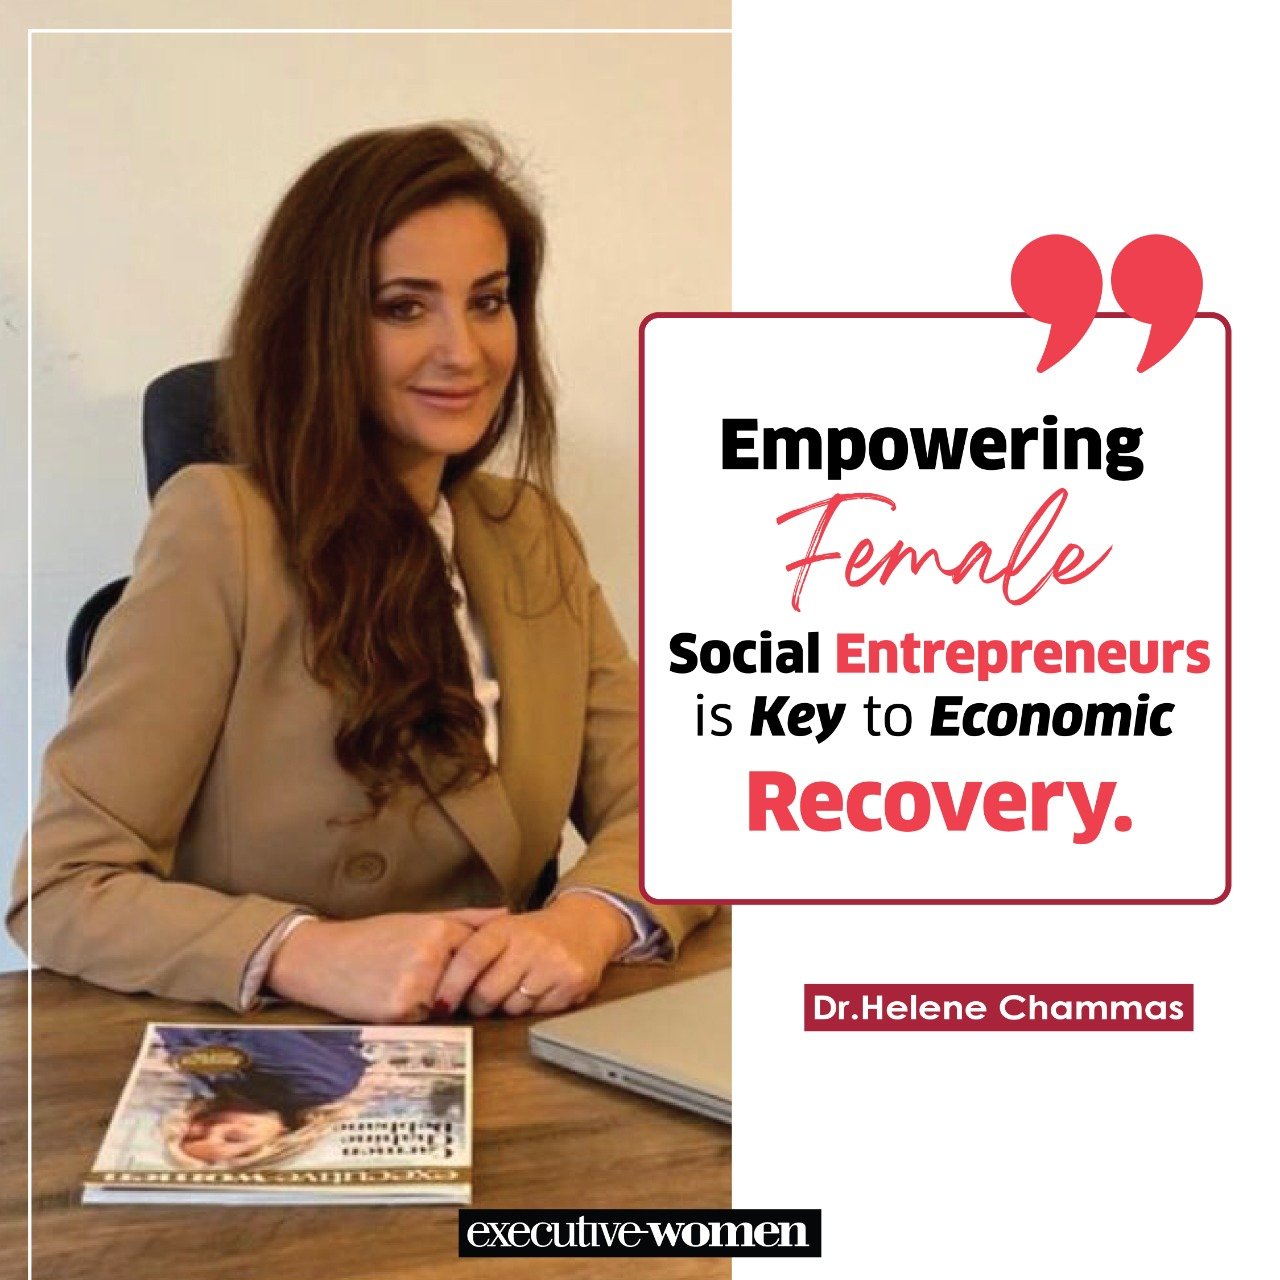 Dr. Helene Chammas, empowering female social entrepreneurs